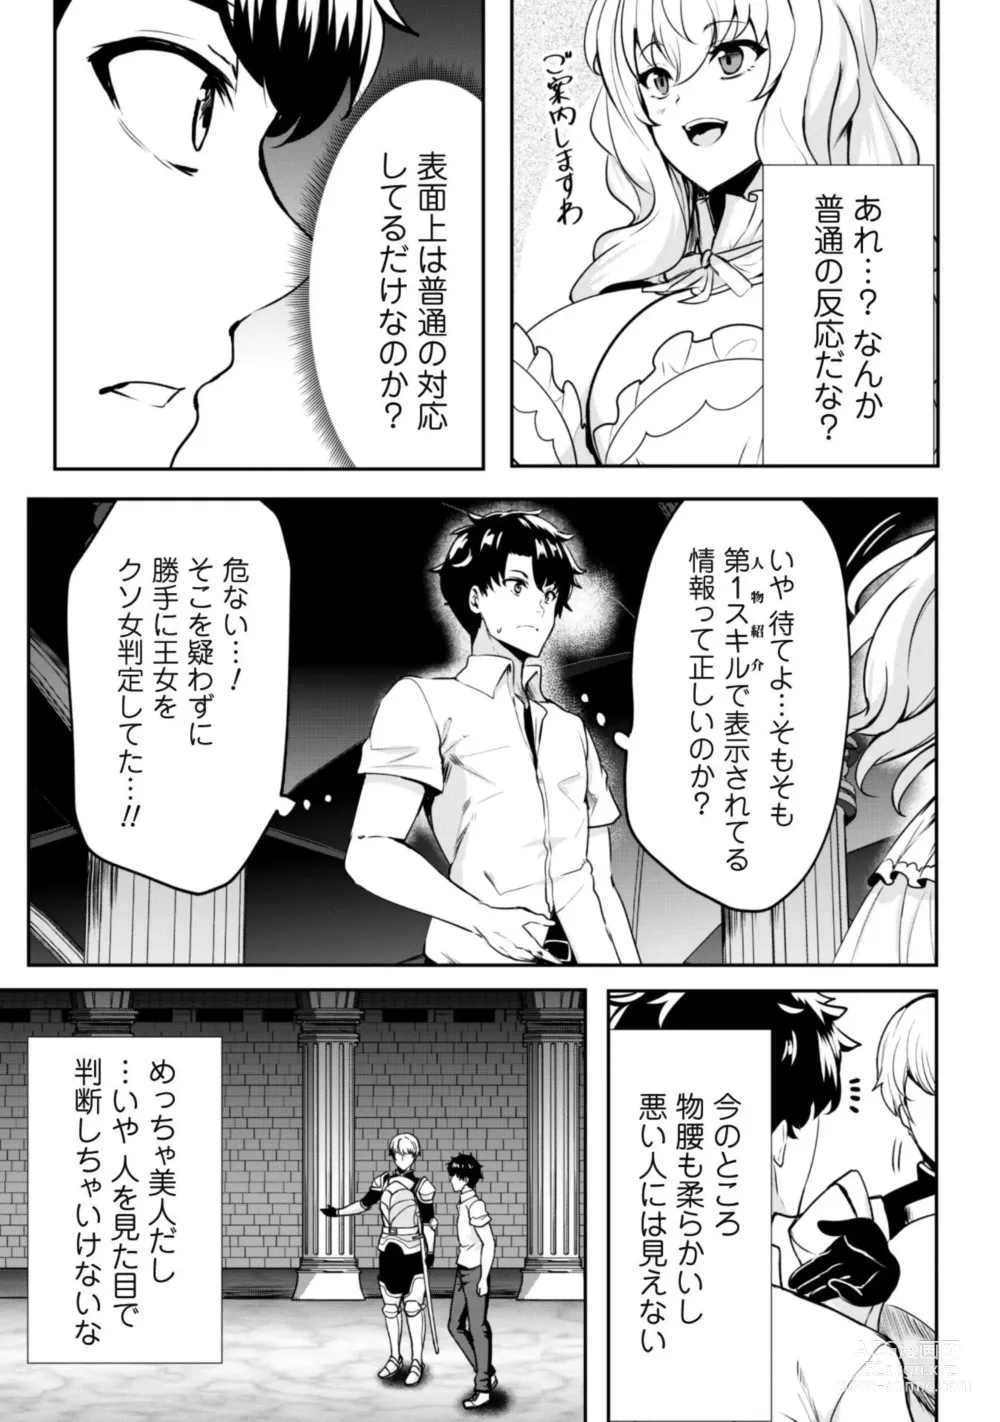 Page 12 of manga Hangyaku no Yūsha 〜 Sukiru o Tsukatte Haraguro ōjo no Kokoro to Karada o Shōaku seyo 〜 1-2